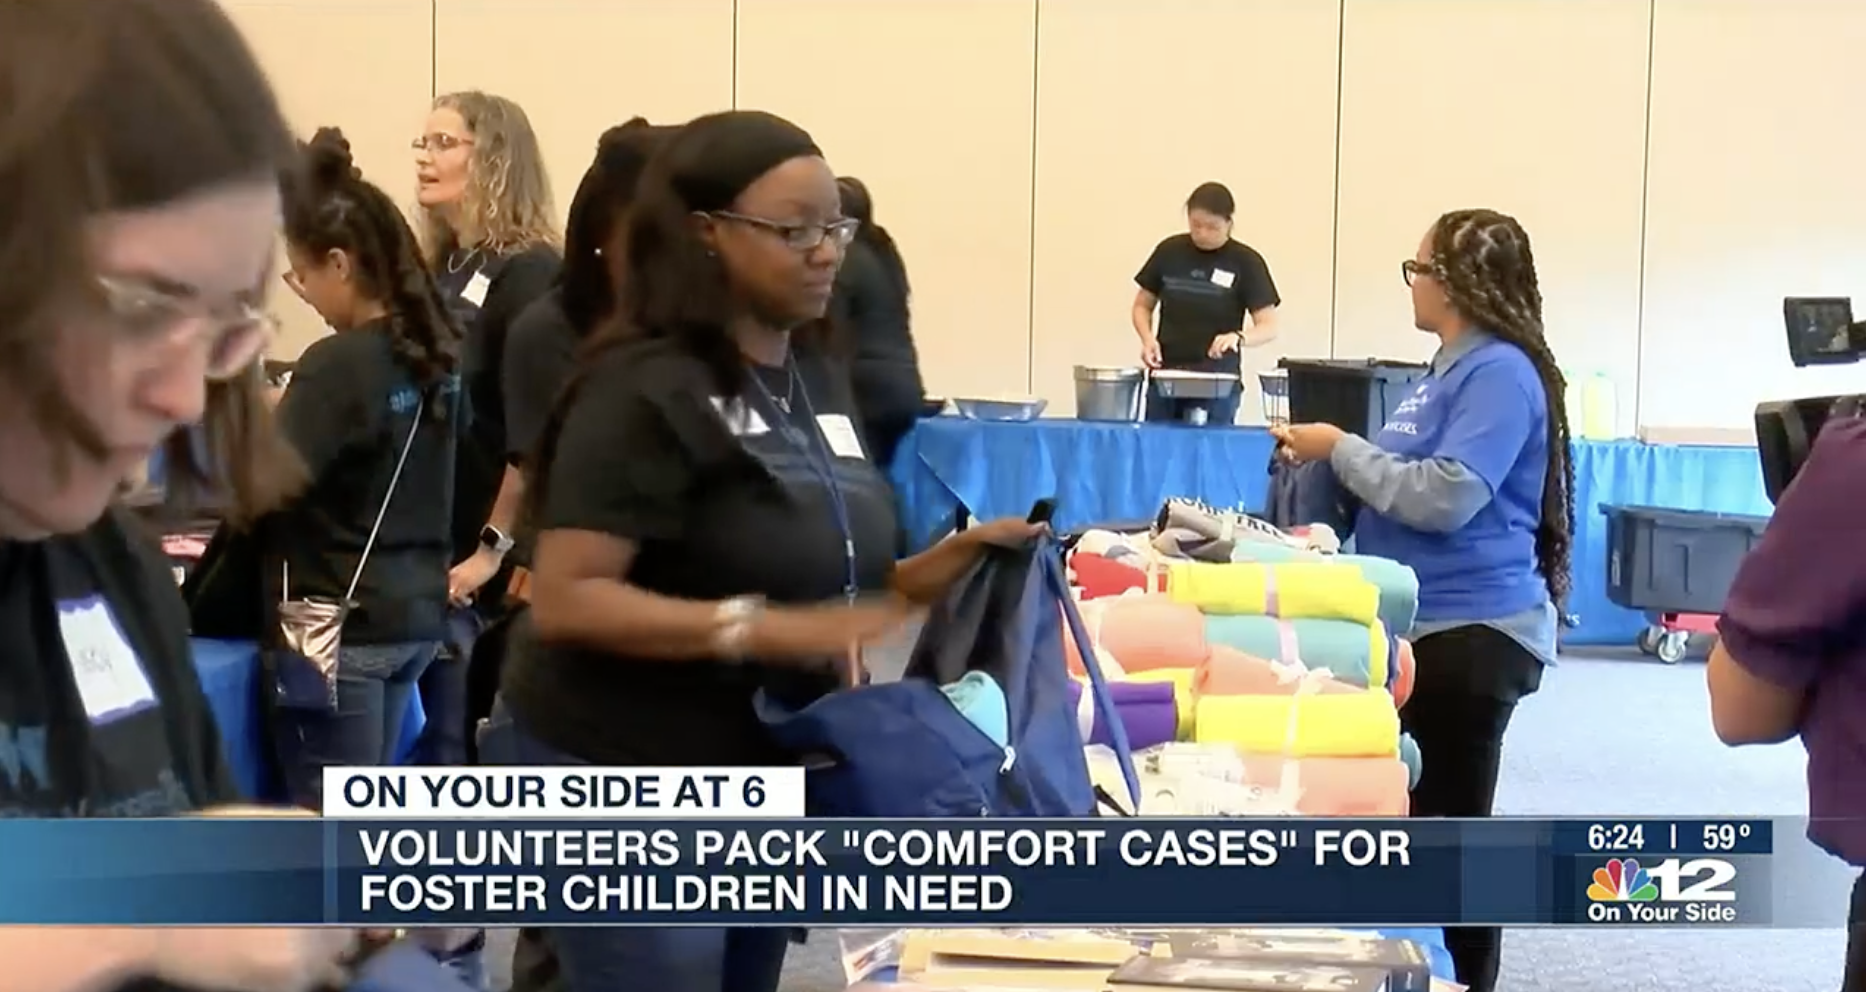 Volunteers pack "Comfort Cases" for foster children in need